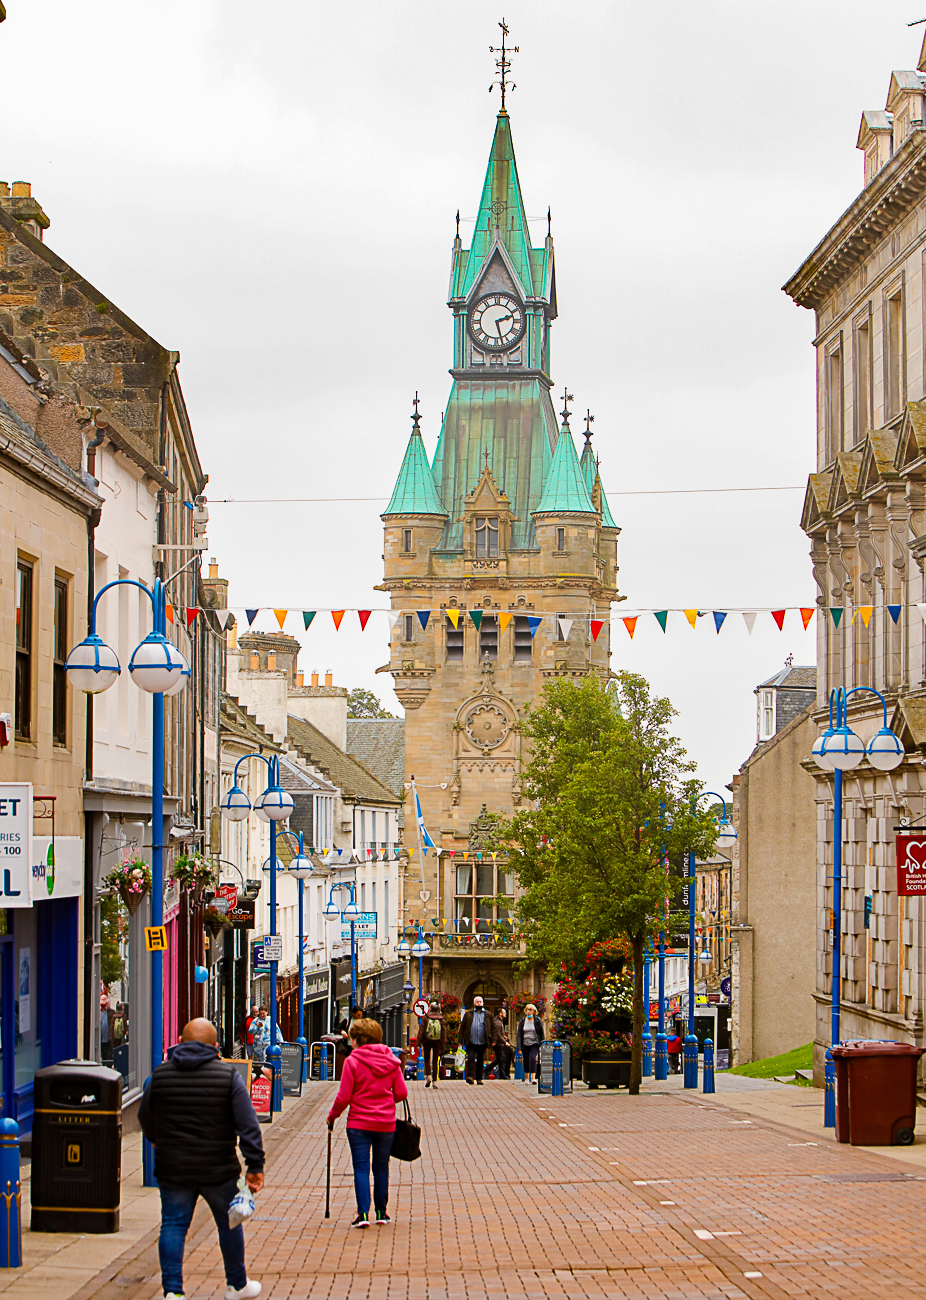 Fife Council publishes positive economic profile for Dunfermline